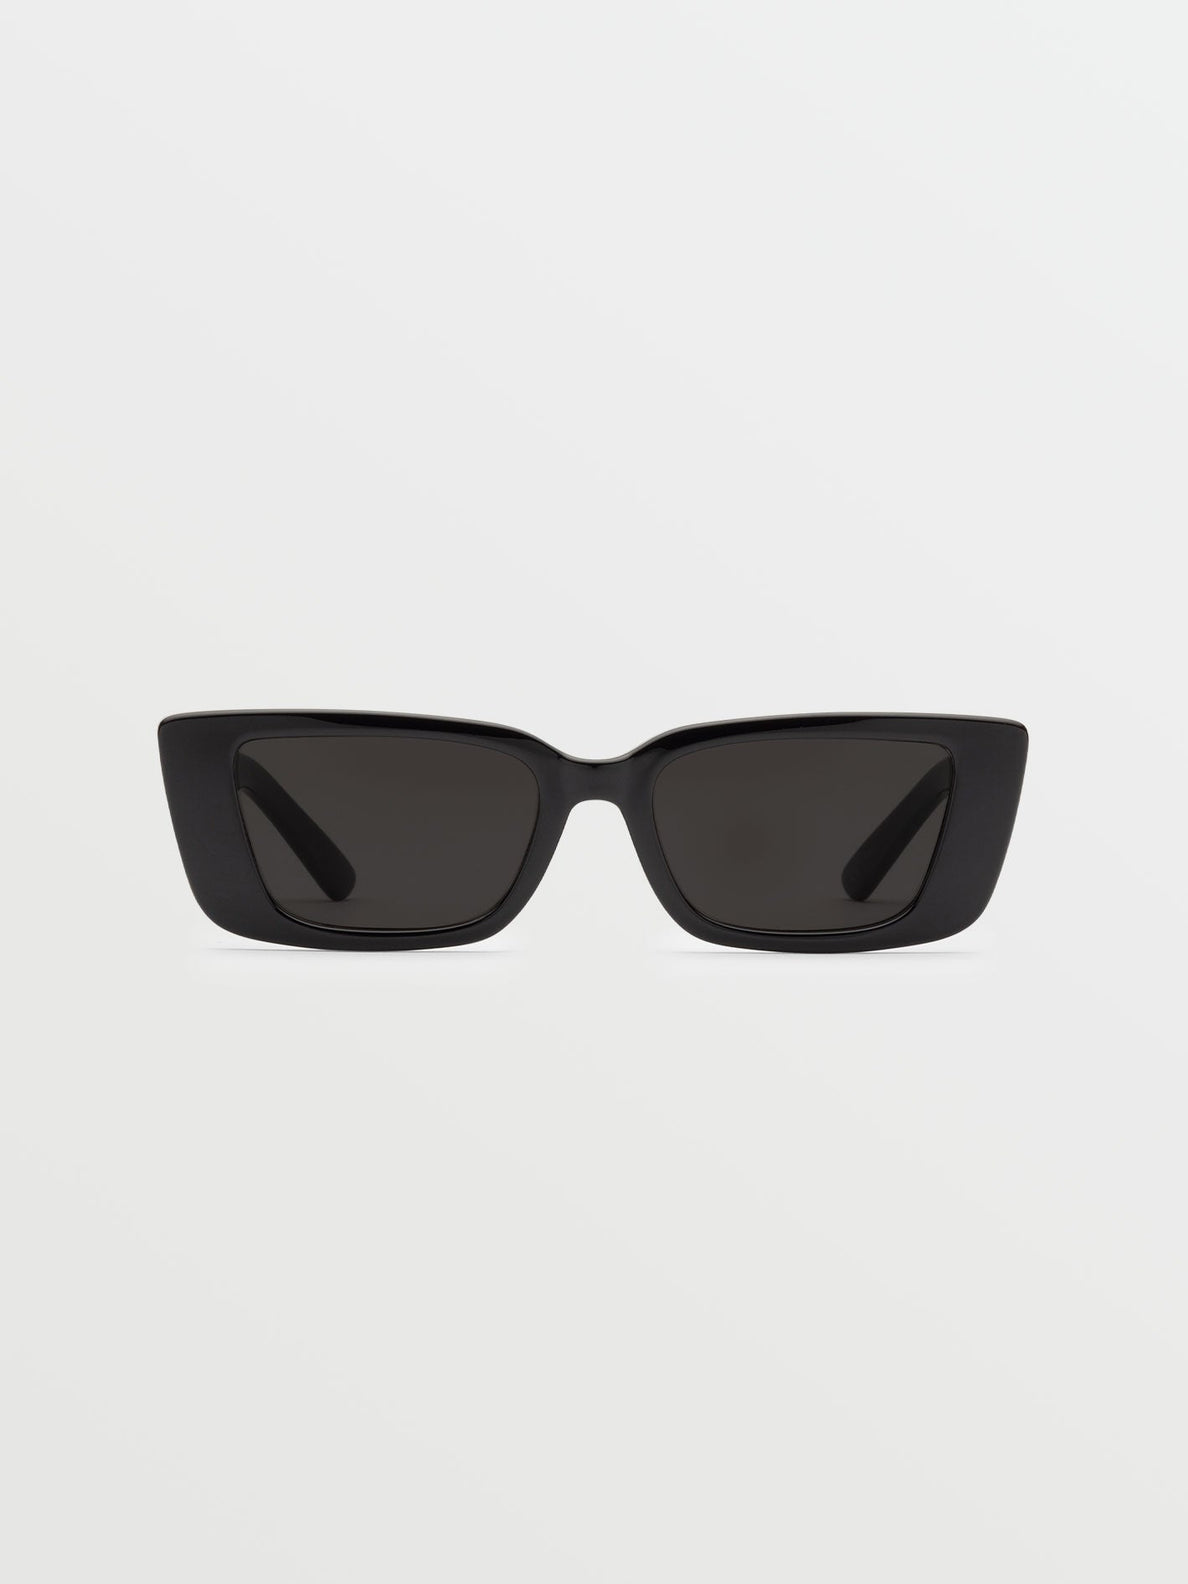 Strange Land Gloss Black Sunglasses (Gray Lens) - BLACK (VE04000201_BLK) [B]